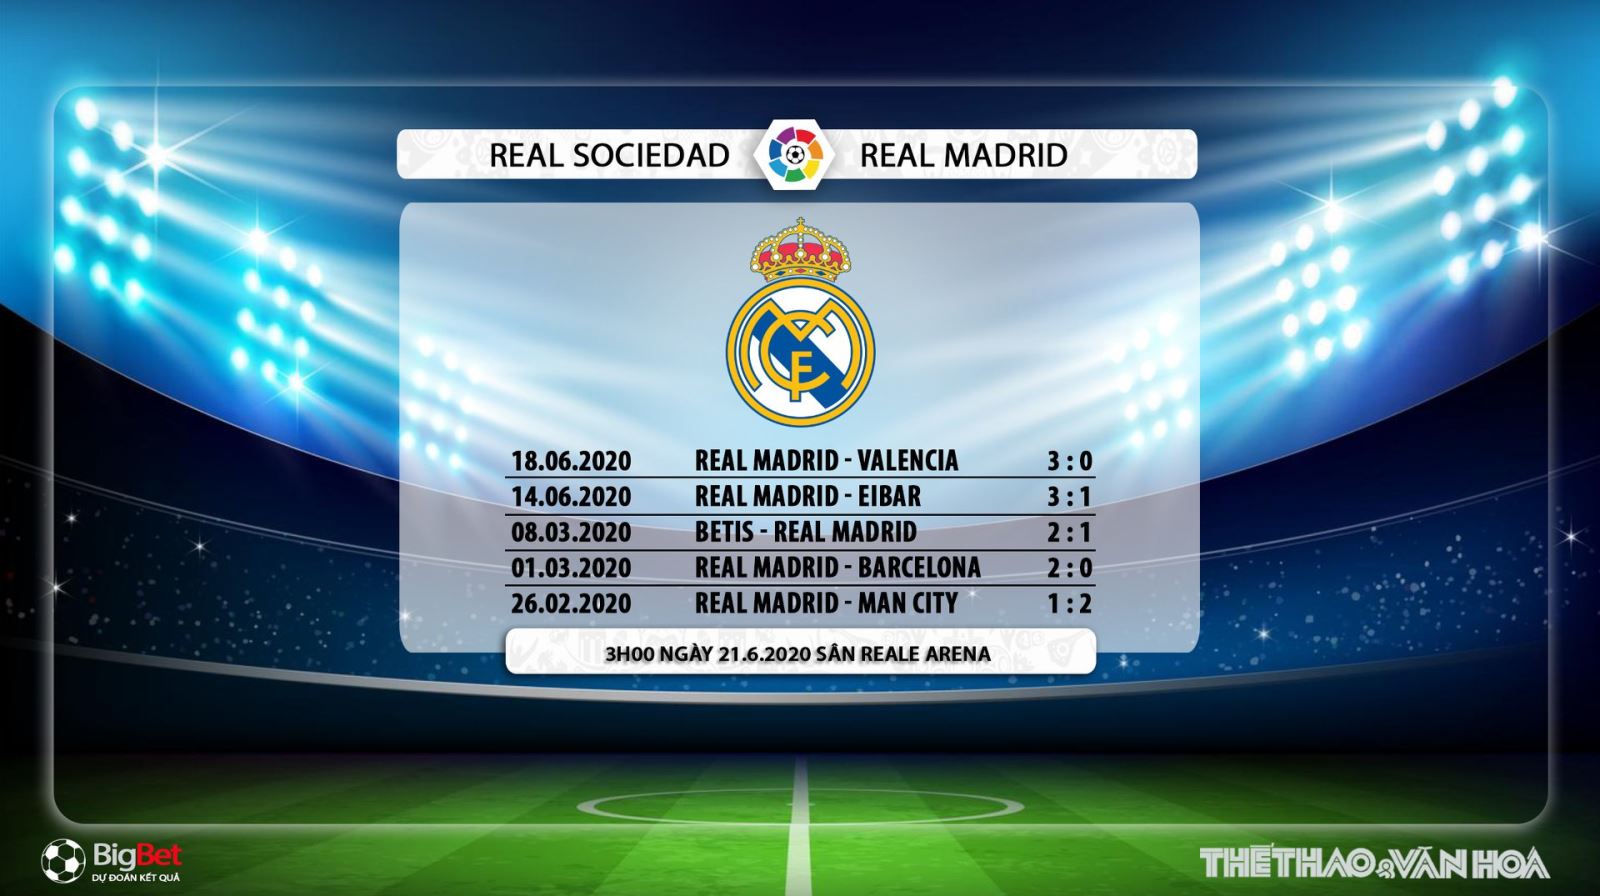 Real Sociedad vs Real Madrid, Real Madrid, Real Sociedad, trực tiếp bóng đá, soi kèo, kèo bóng đá, bóng đá hôm nay, lịch thi đấu